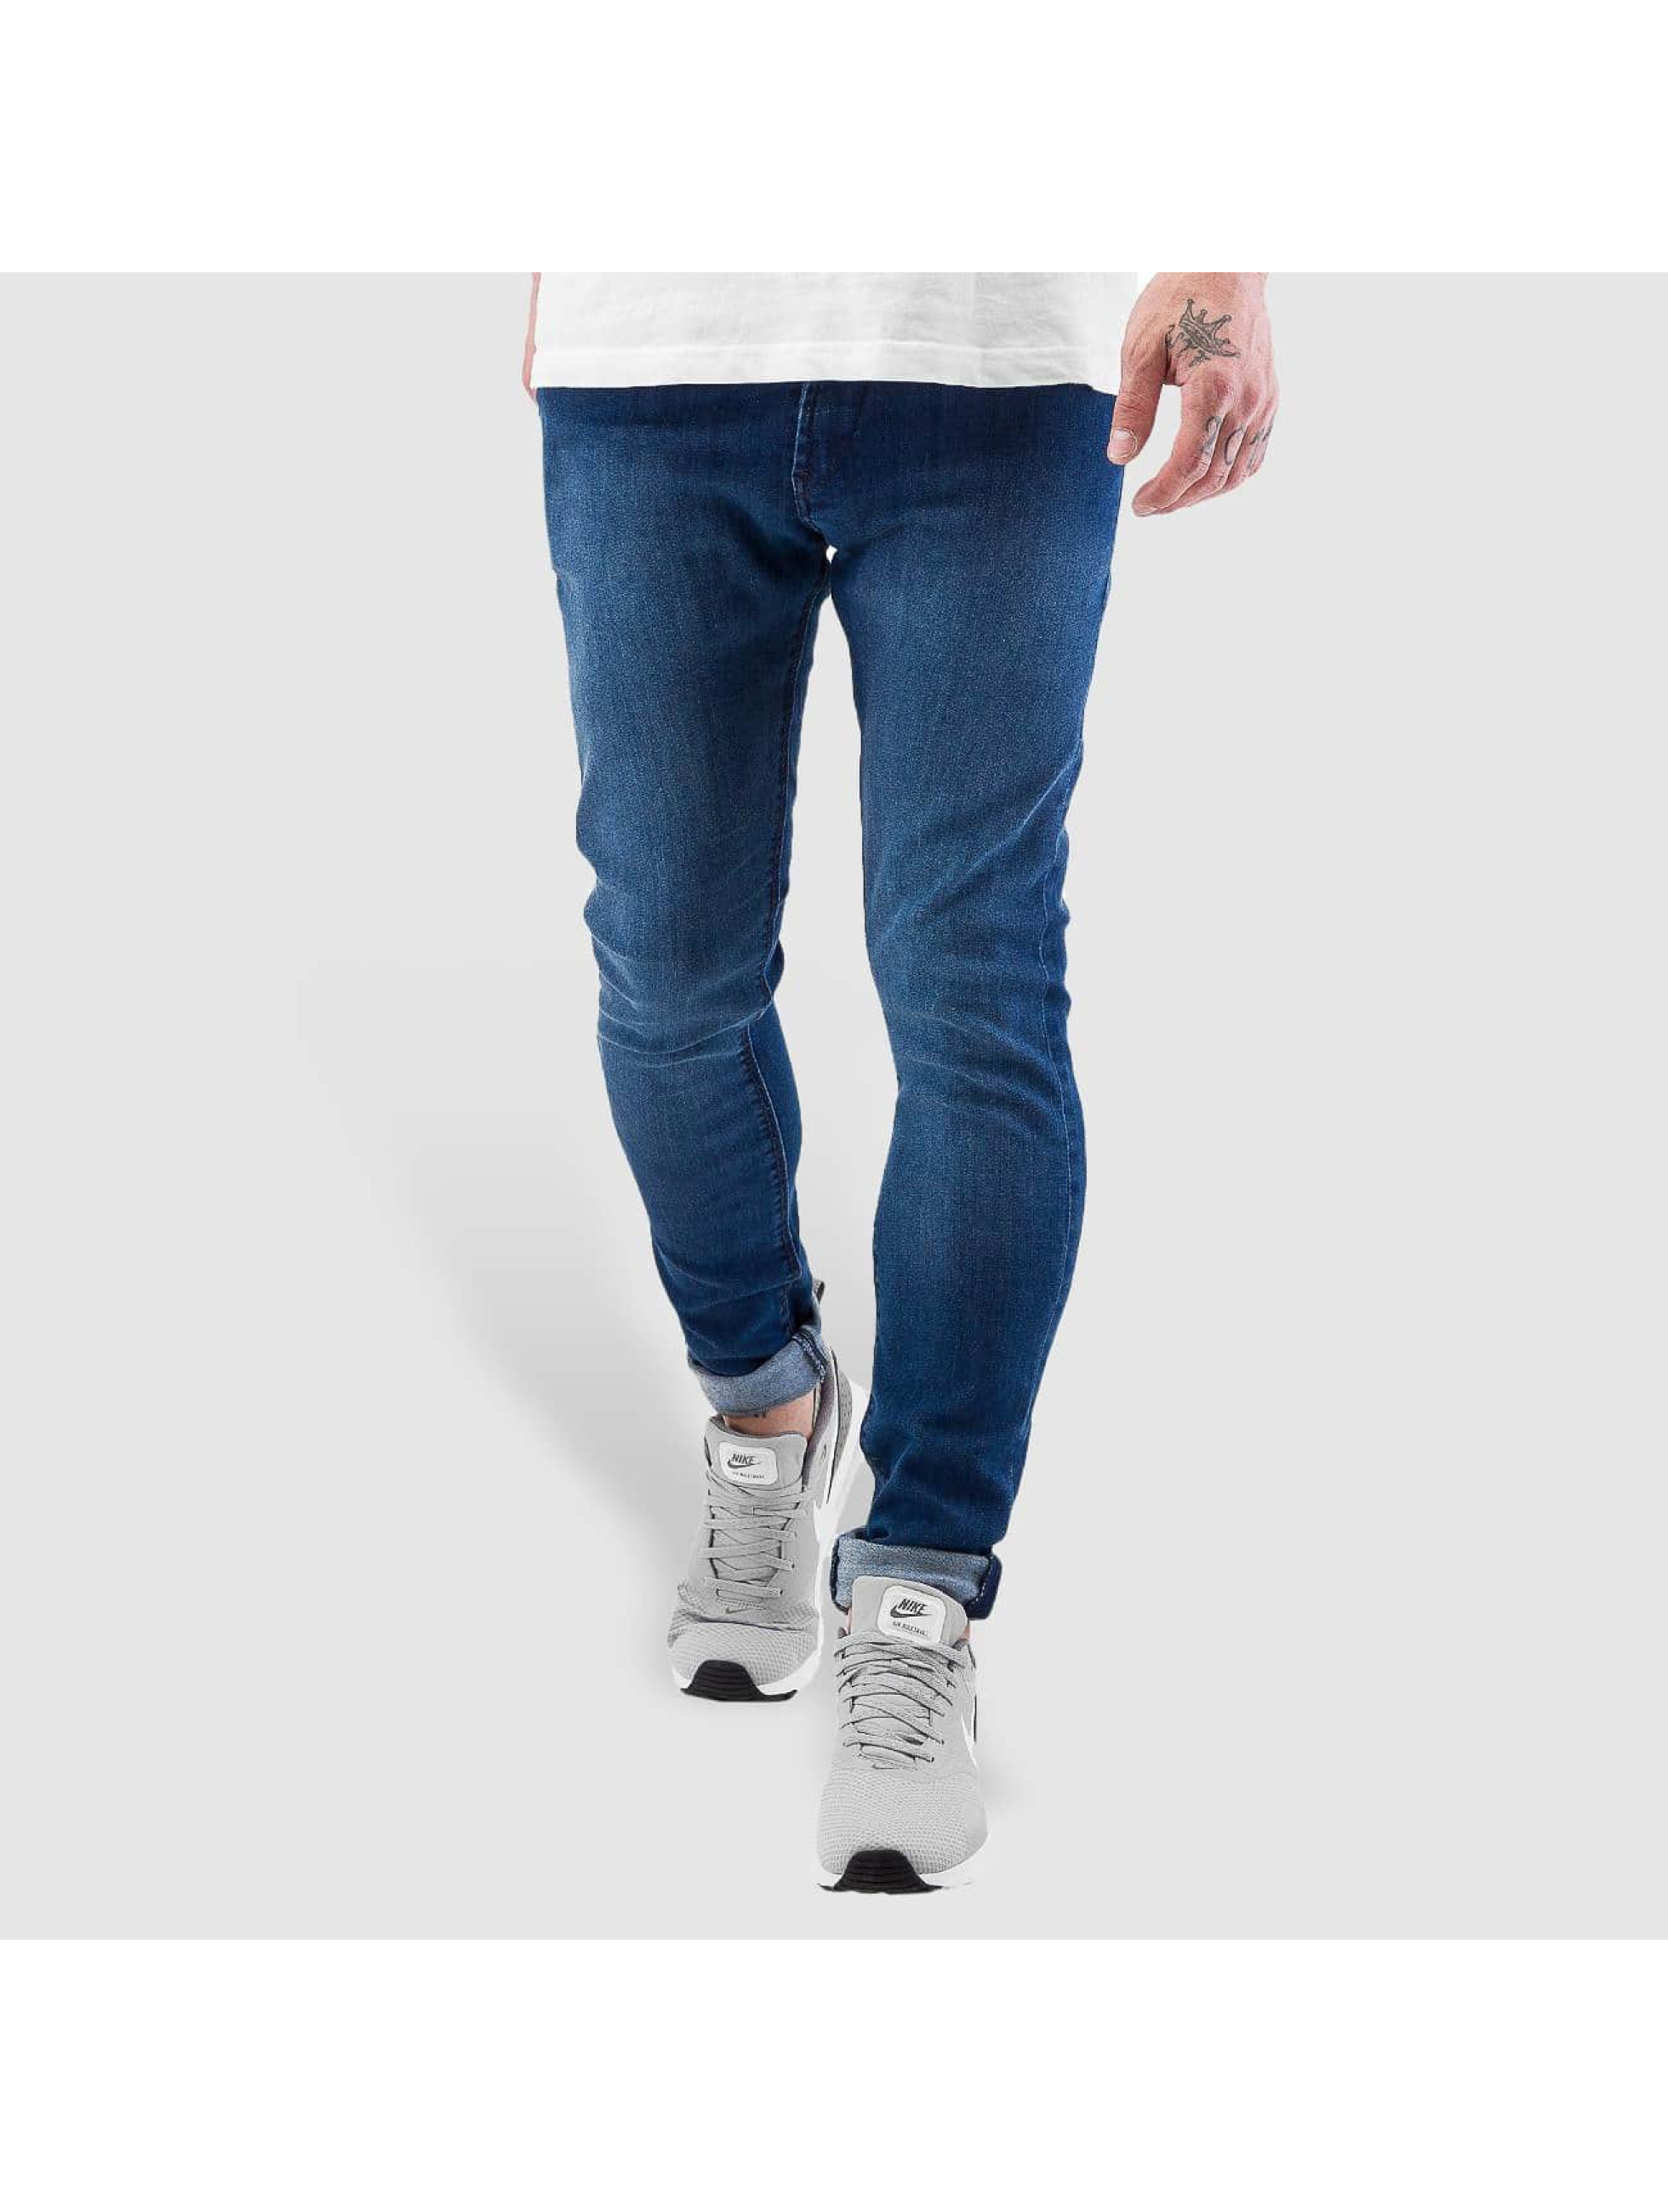 Jeans / Skinny Jeans Radar Stretch Super Slim Fit in blau